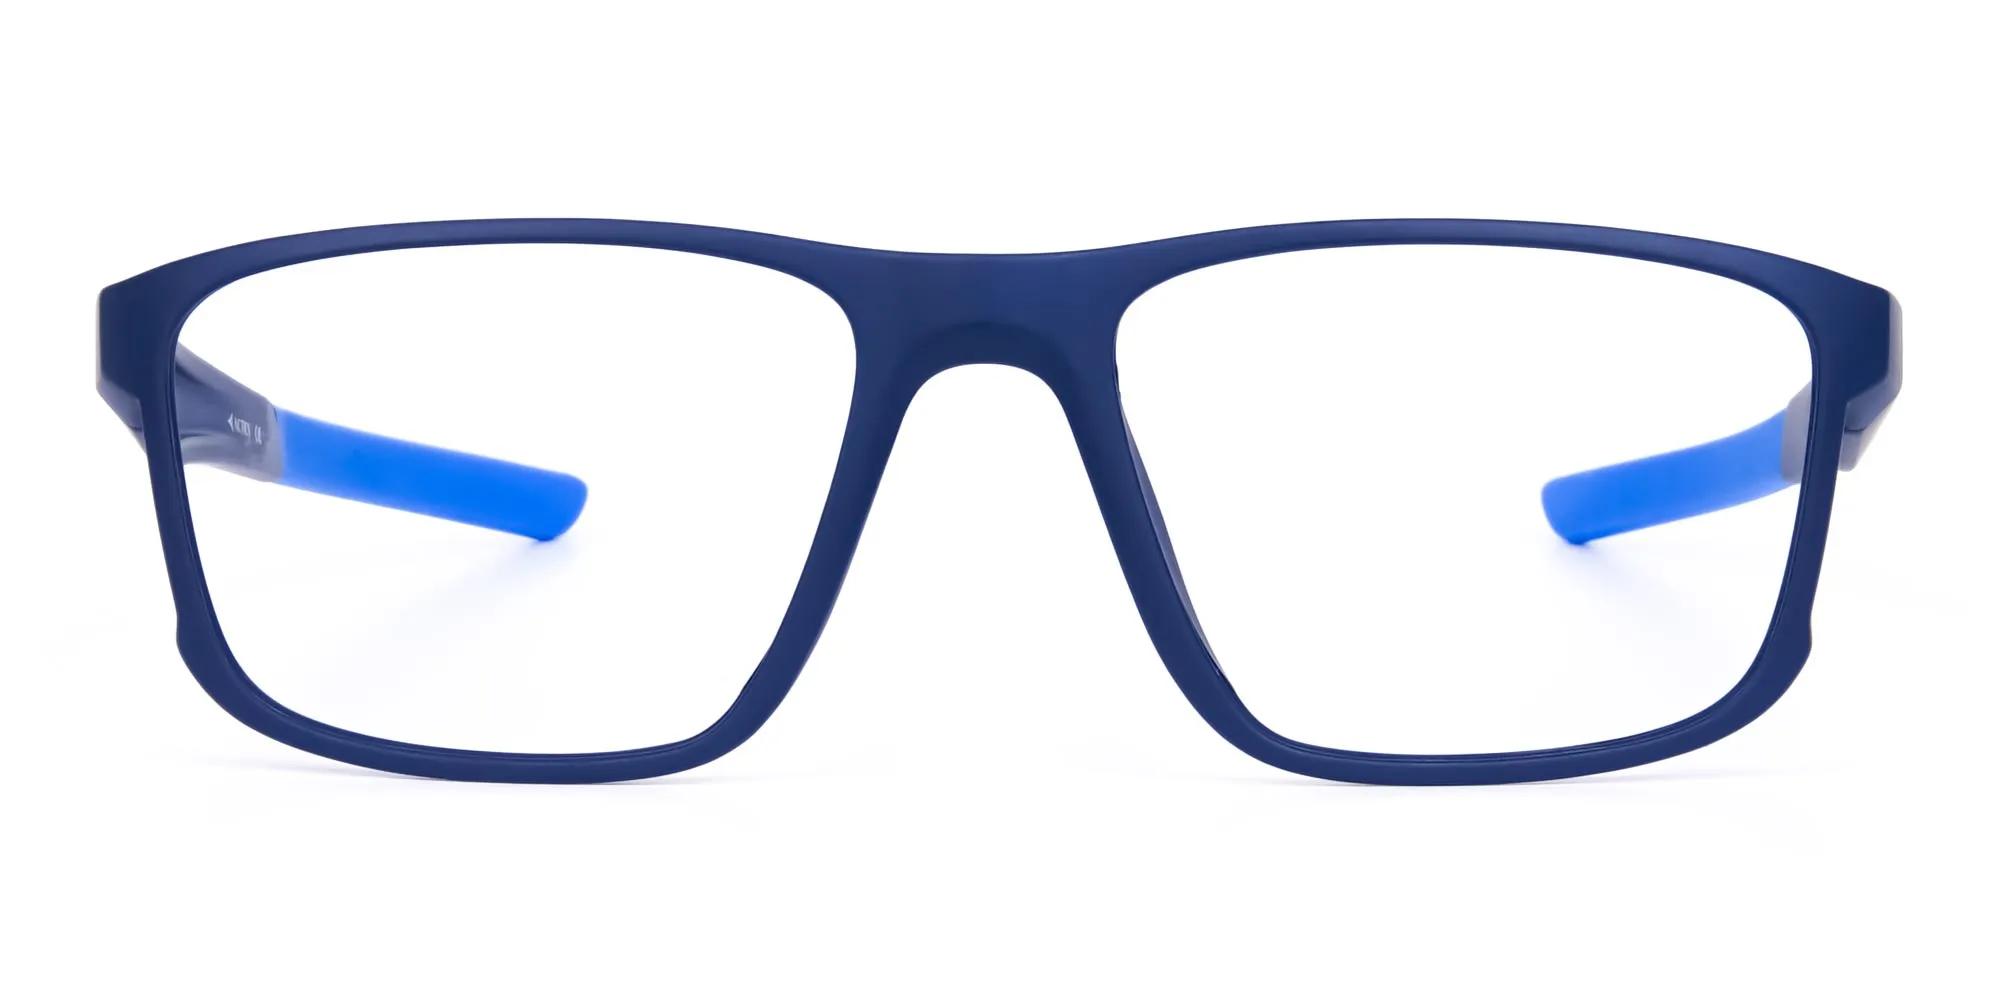 Navy Blue Rectangular polarized fishing glasses